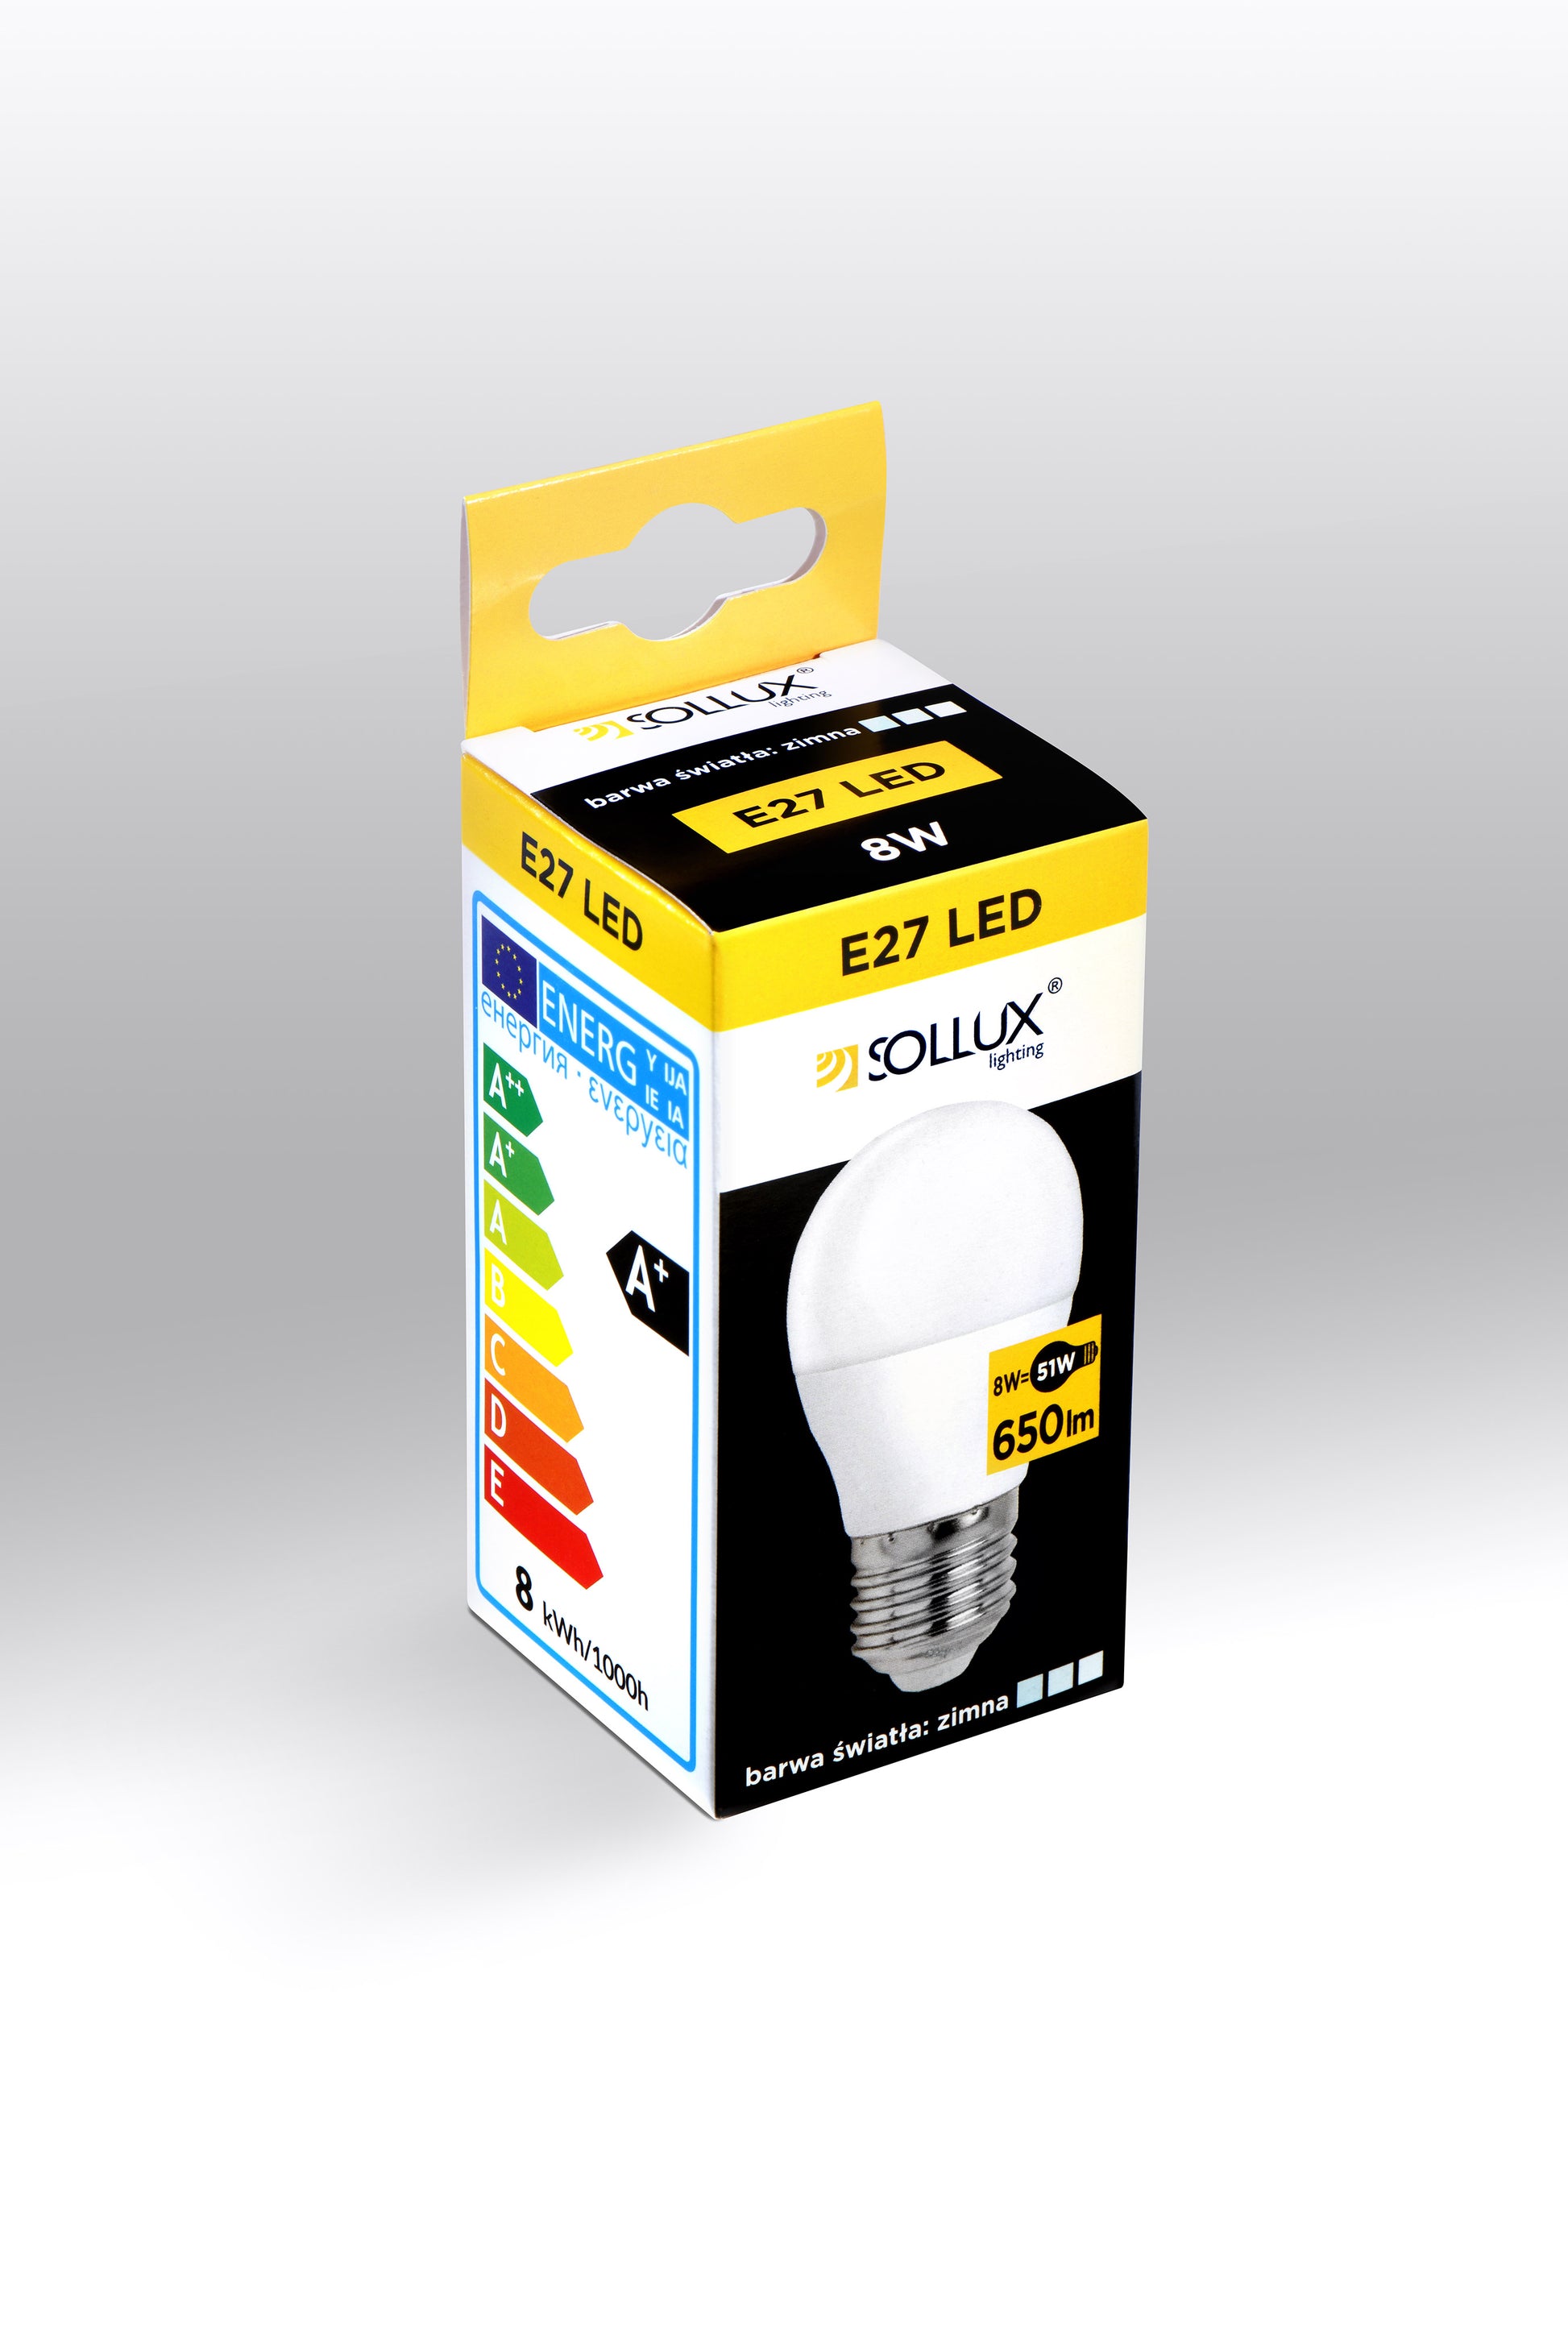 LED bulb E27 4000K 8W 650lm